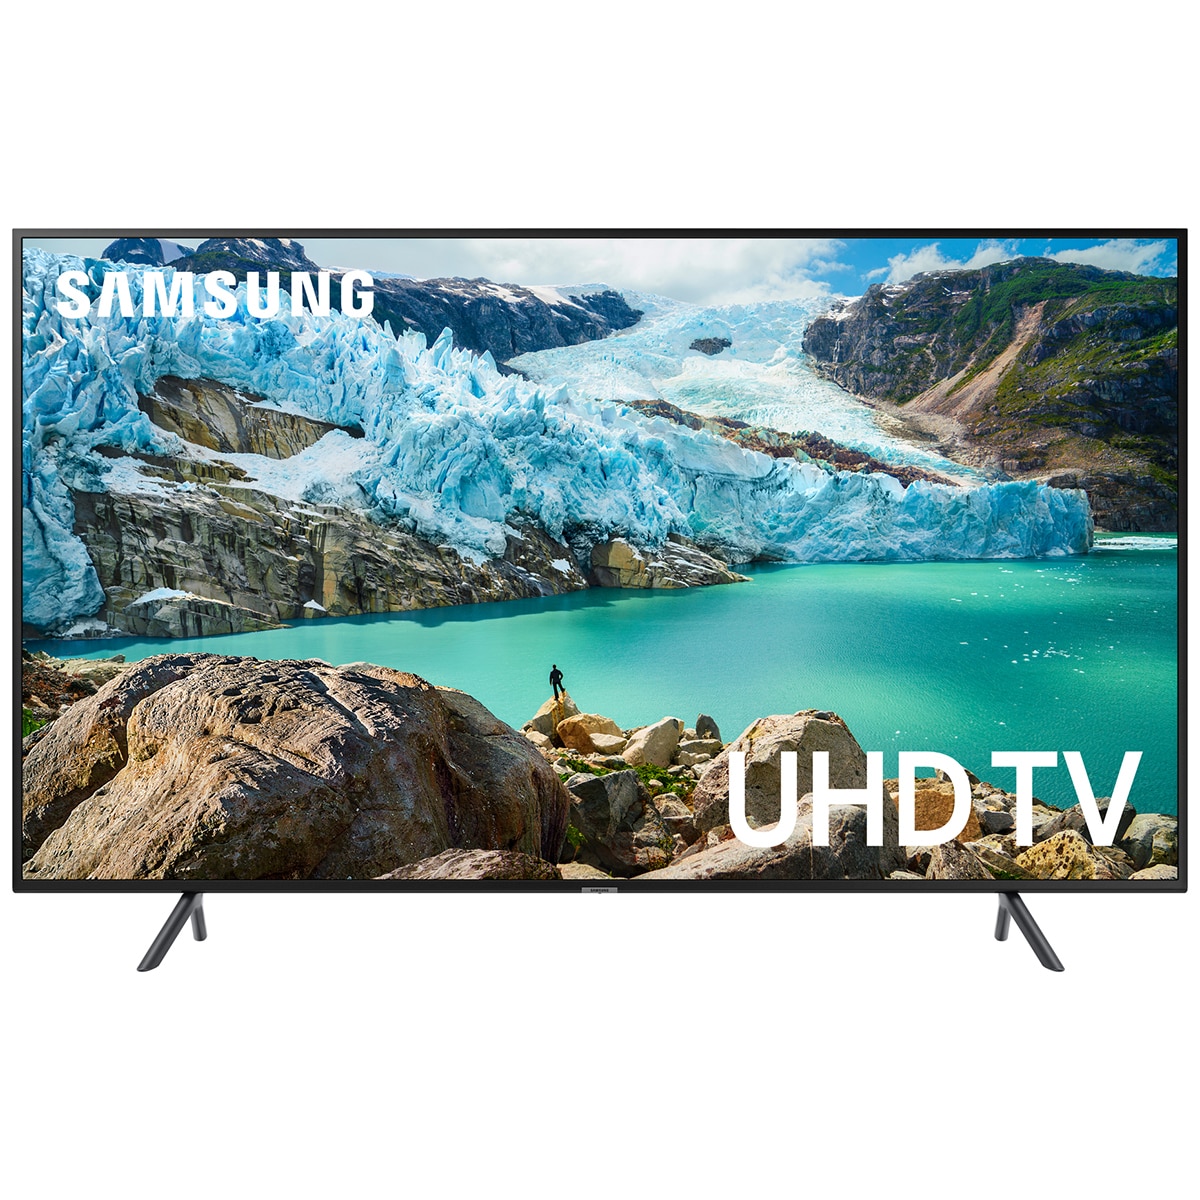 SAMSUNG UA75RU7100 4K HDR UA75RU7100WXXY UHD TV